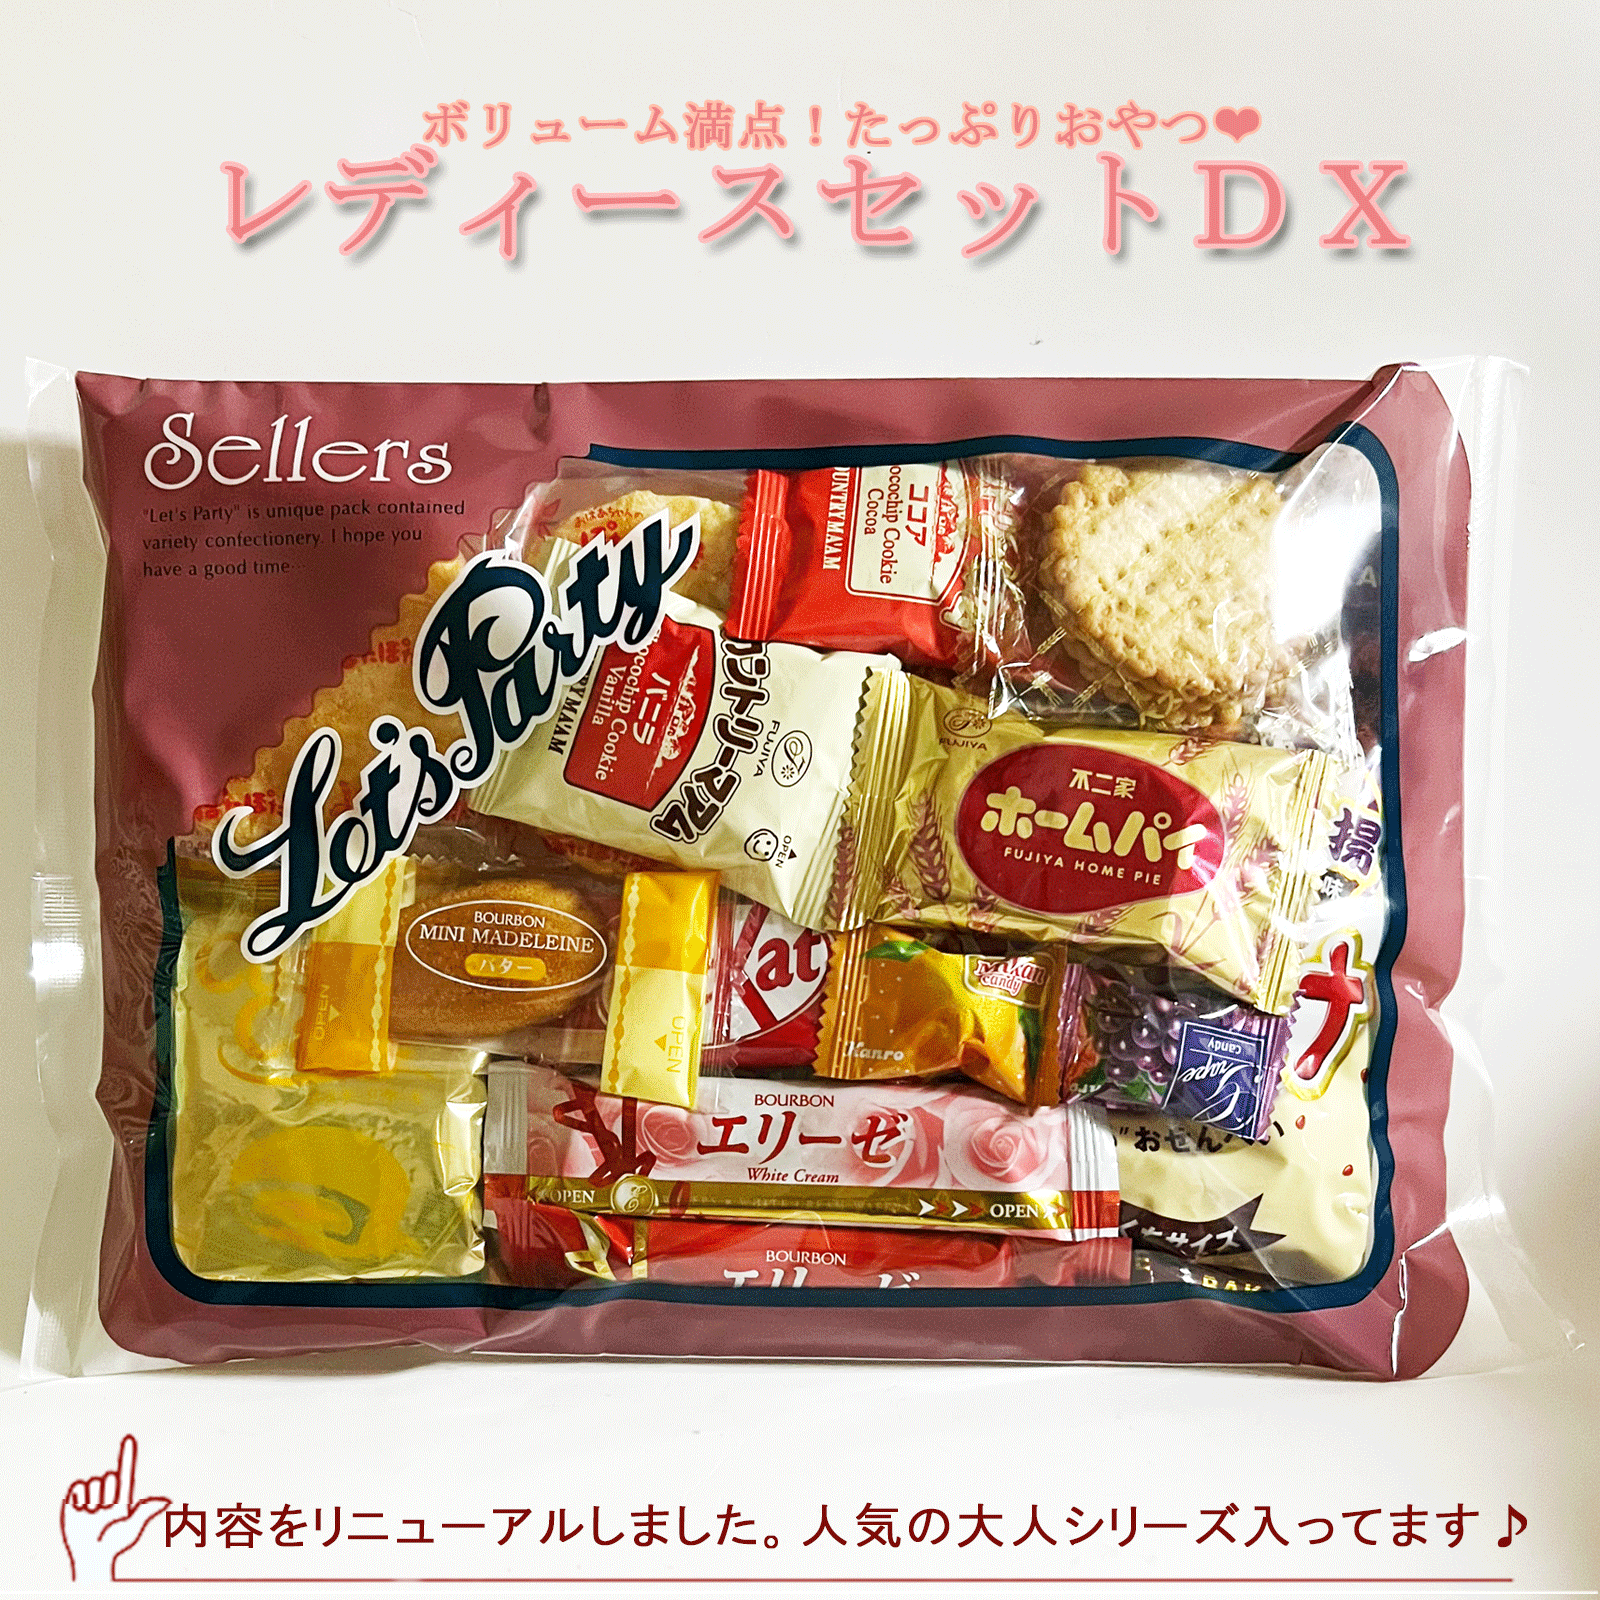 お菓子詰め合わせ袋詰めセット06